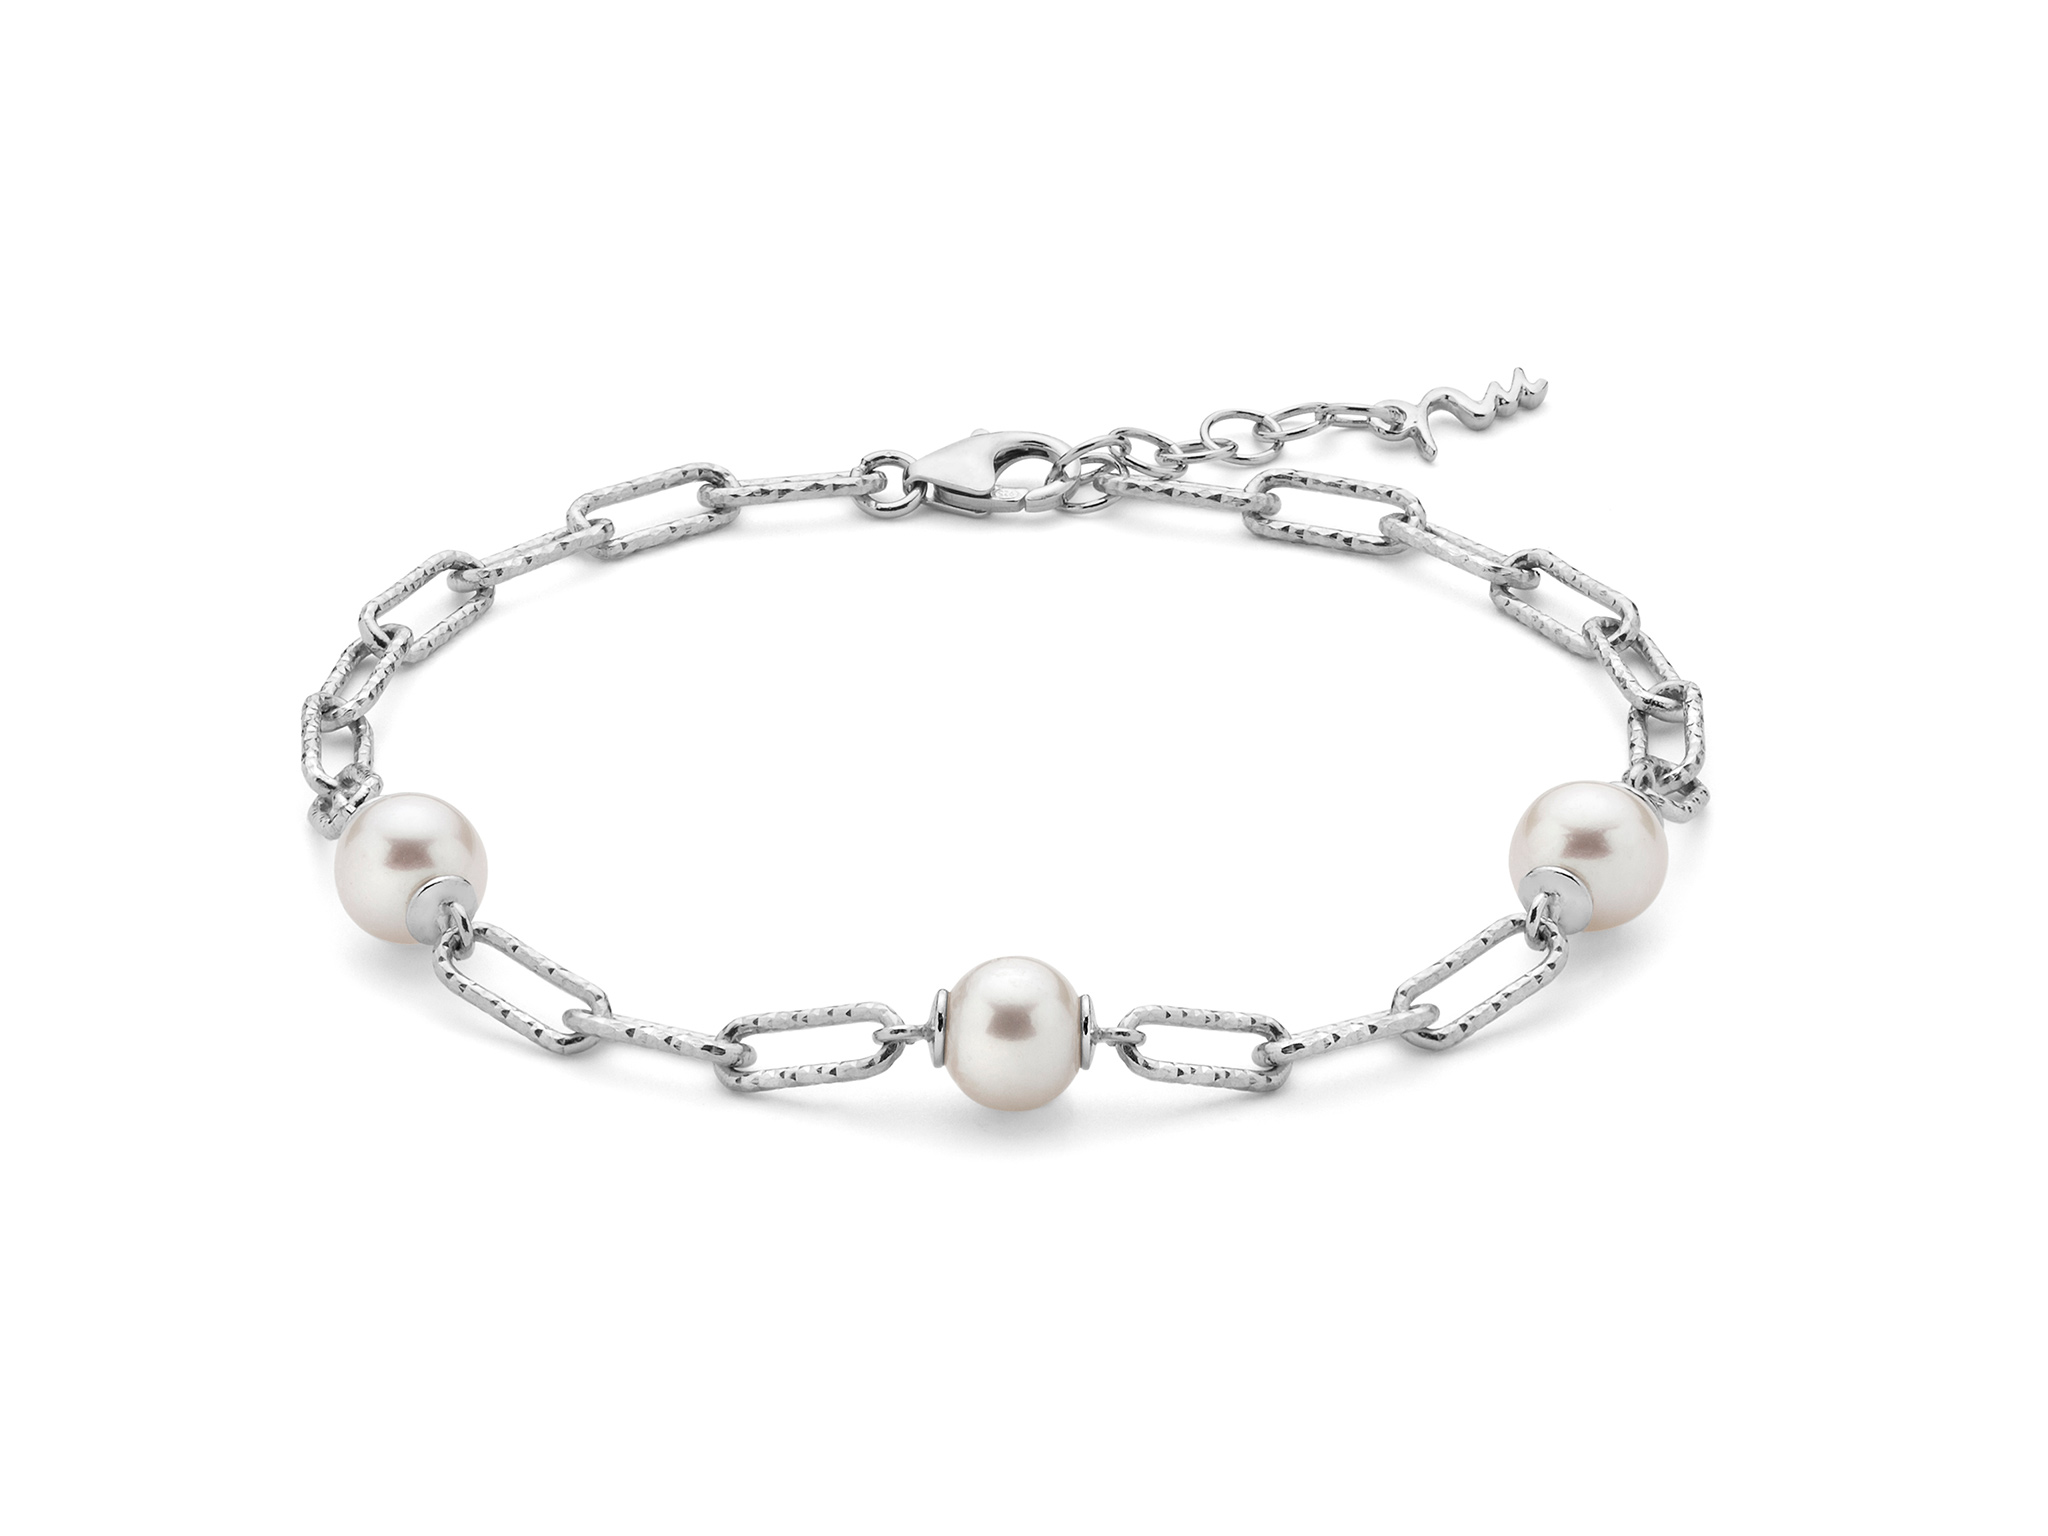 Bracciale con catena a maglia piccola, in argento con perle. - PBR3200